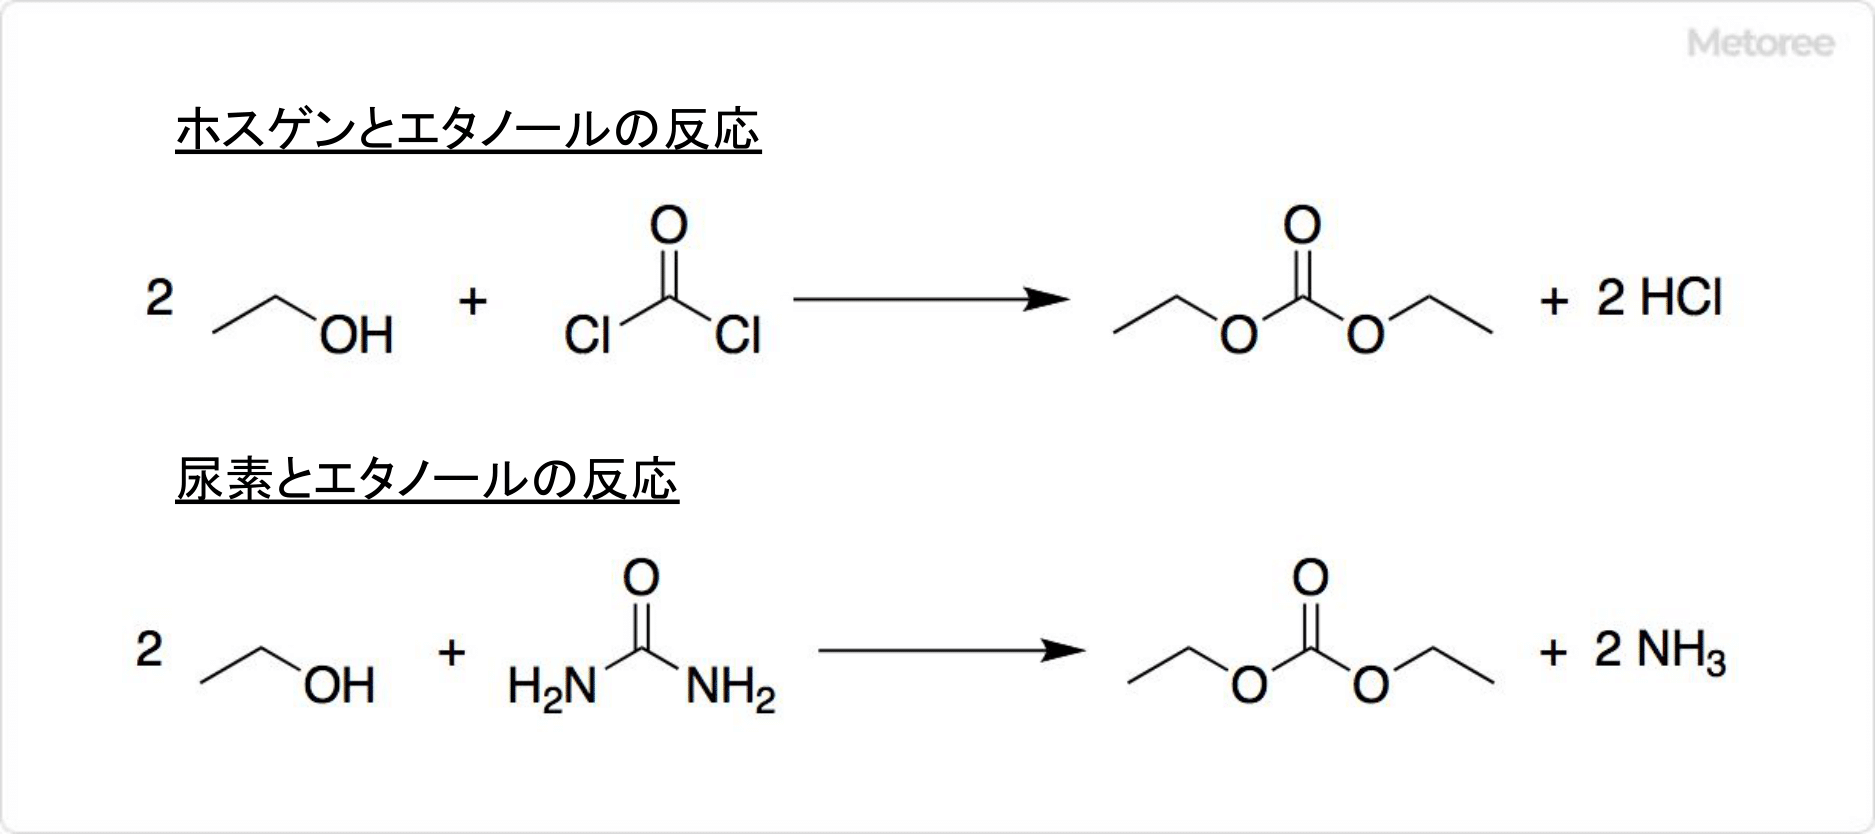 炭酸ジエチルの合成